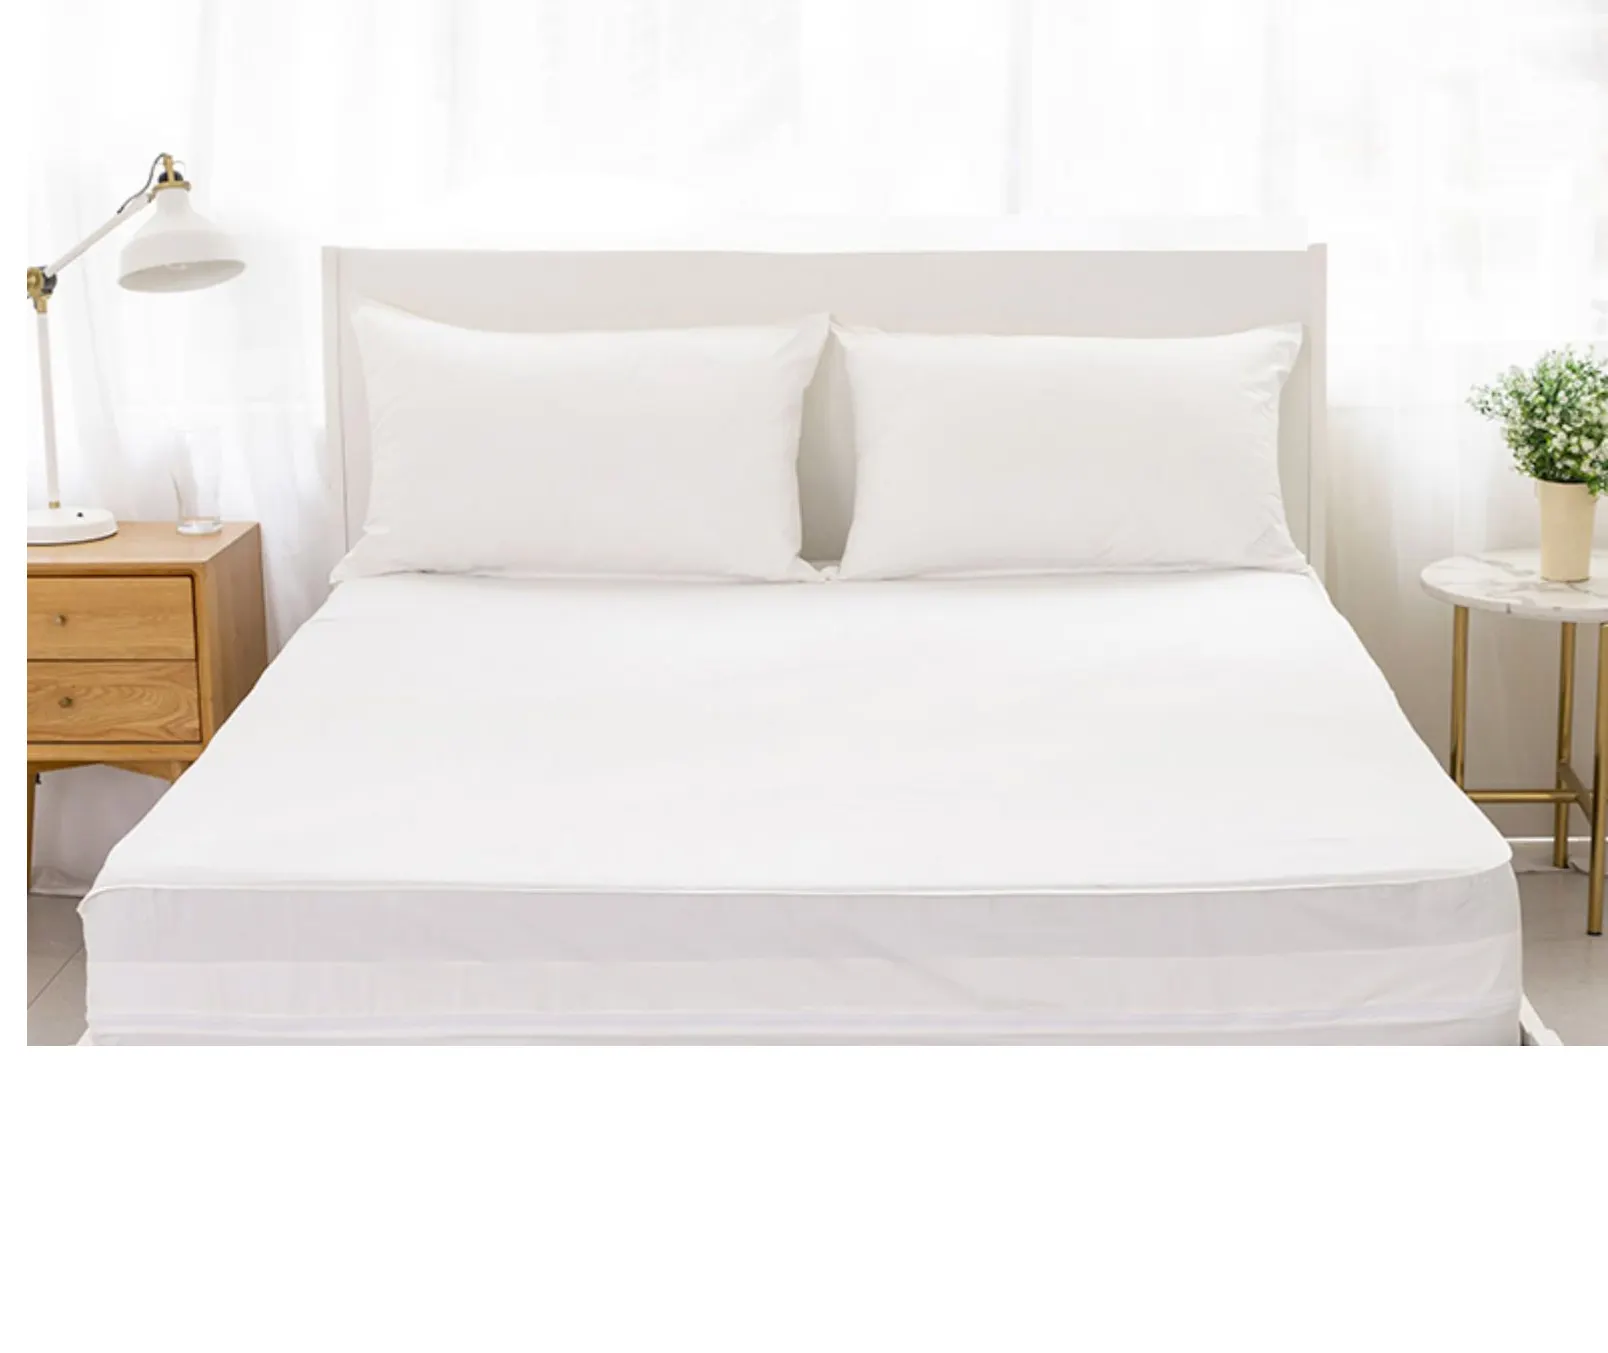 Capa de vinil para colchão, capa de pvc com zíper e cama elegante, capa para colchão de hospital, à prova d'água, protetor de bug de cama